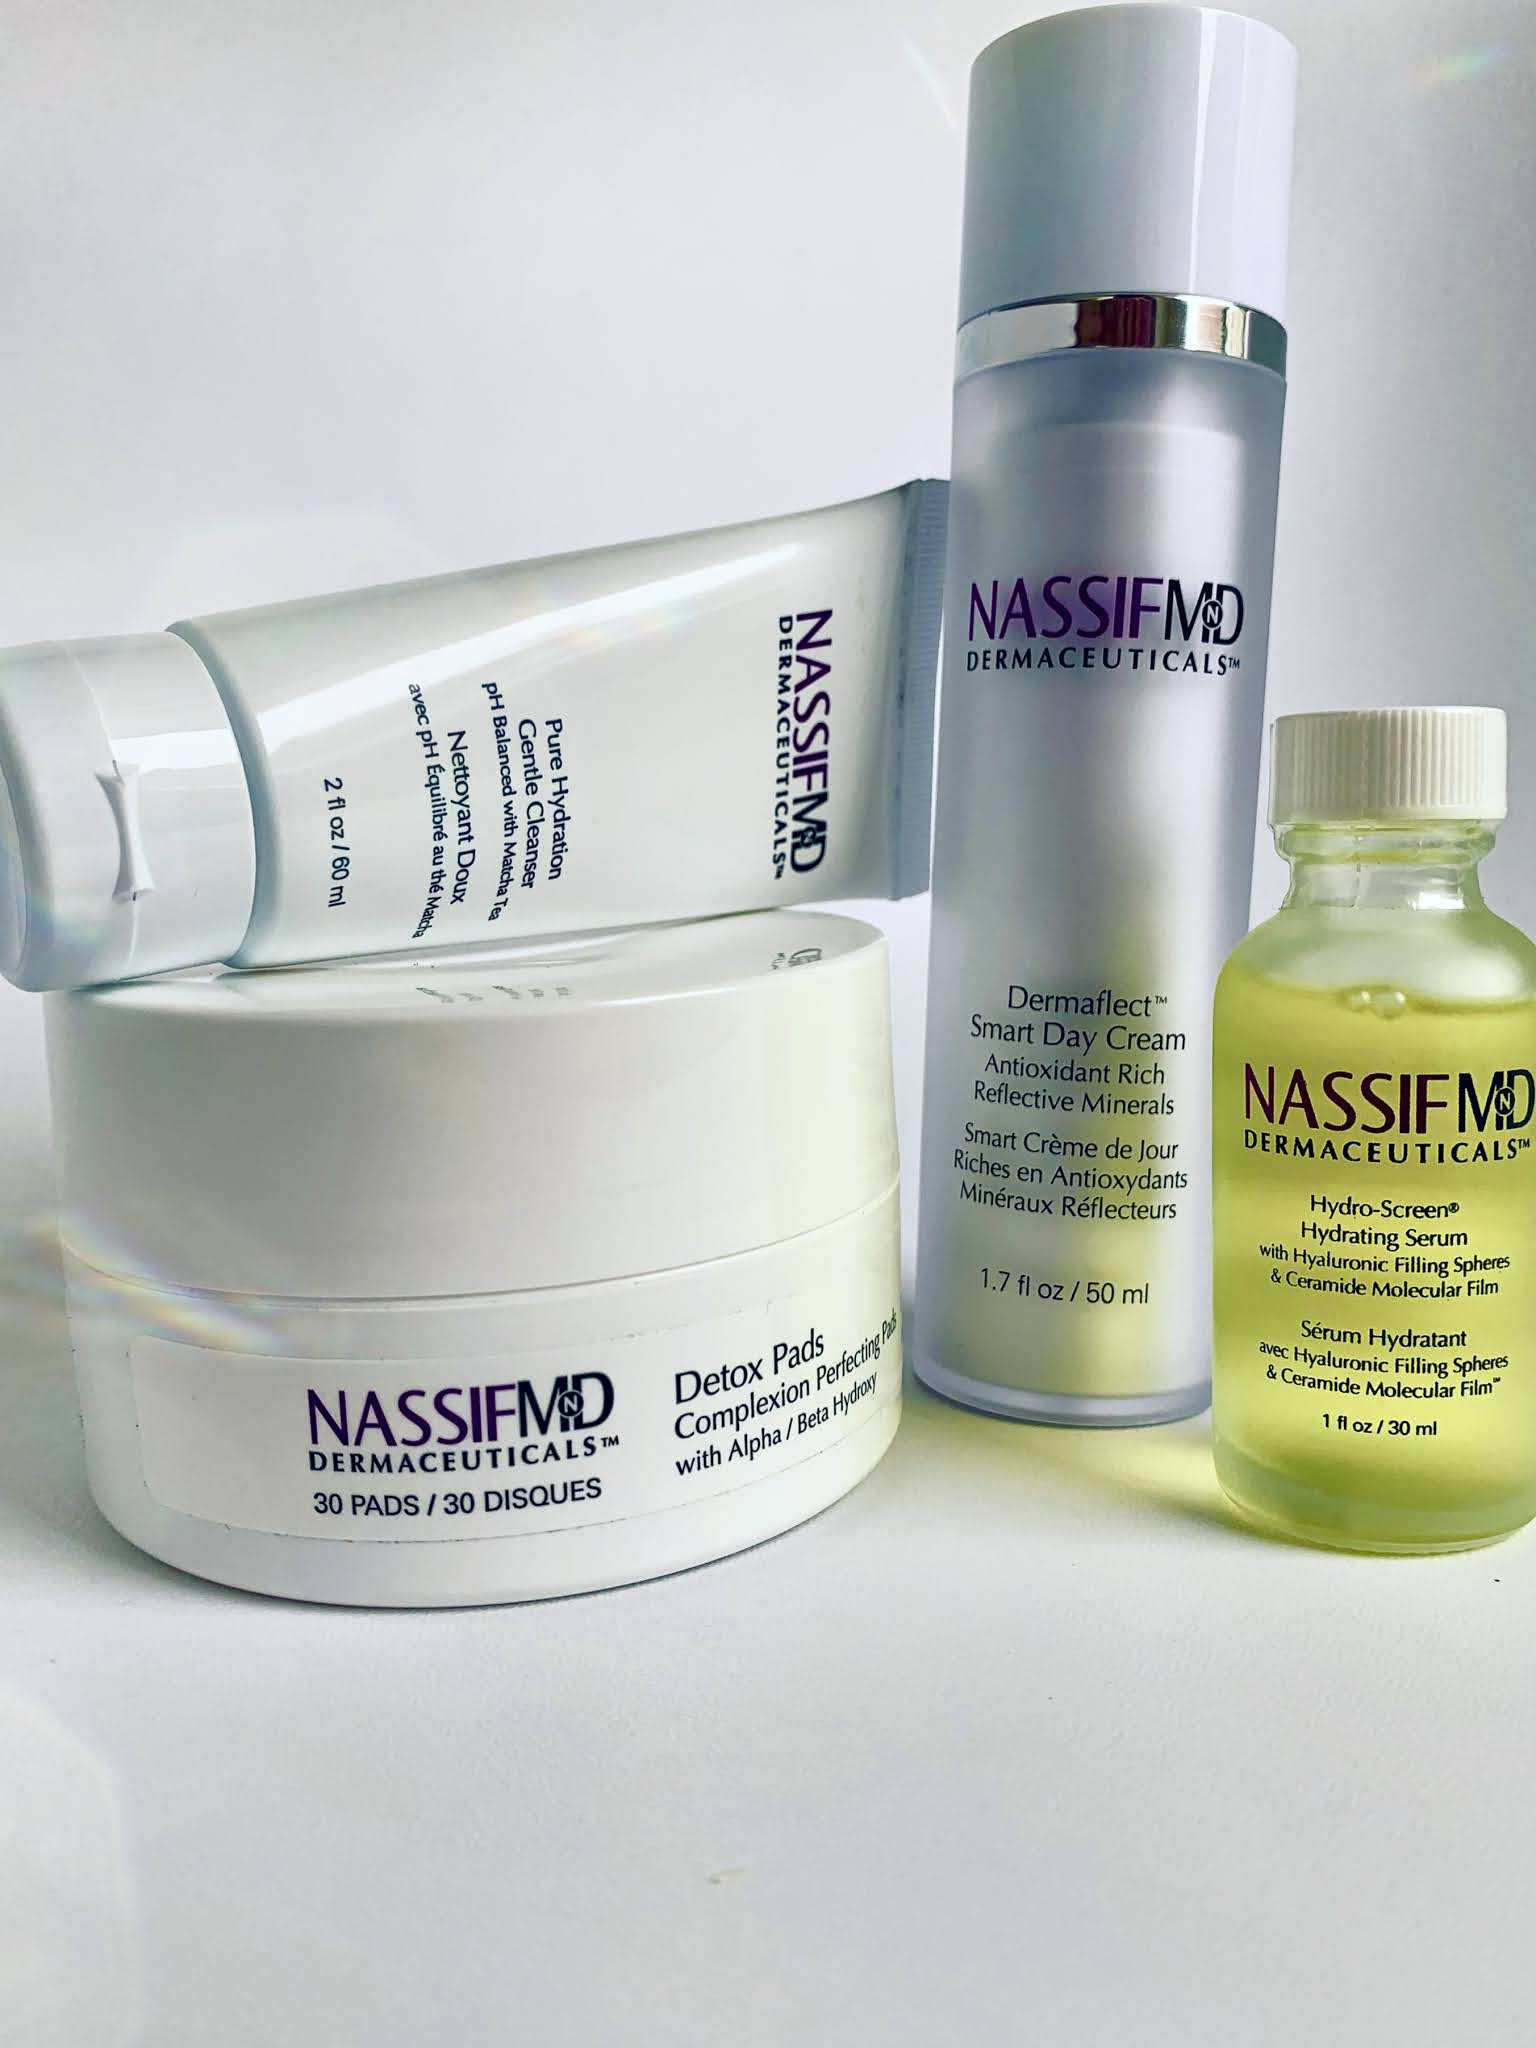 NassifMD Skincare